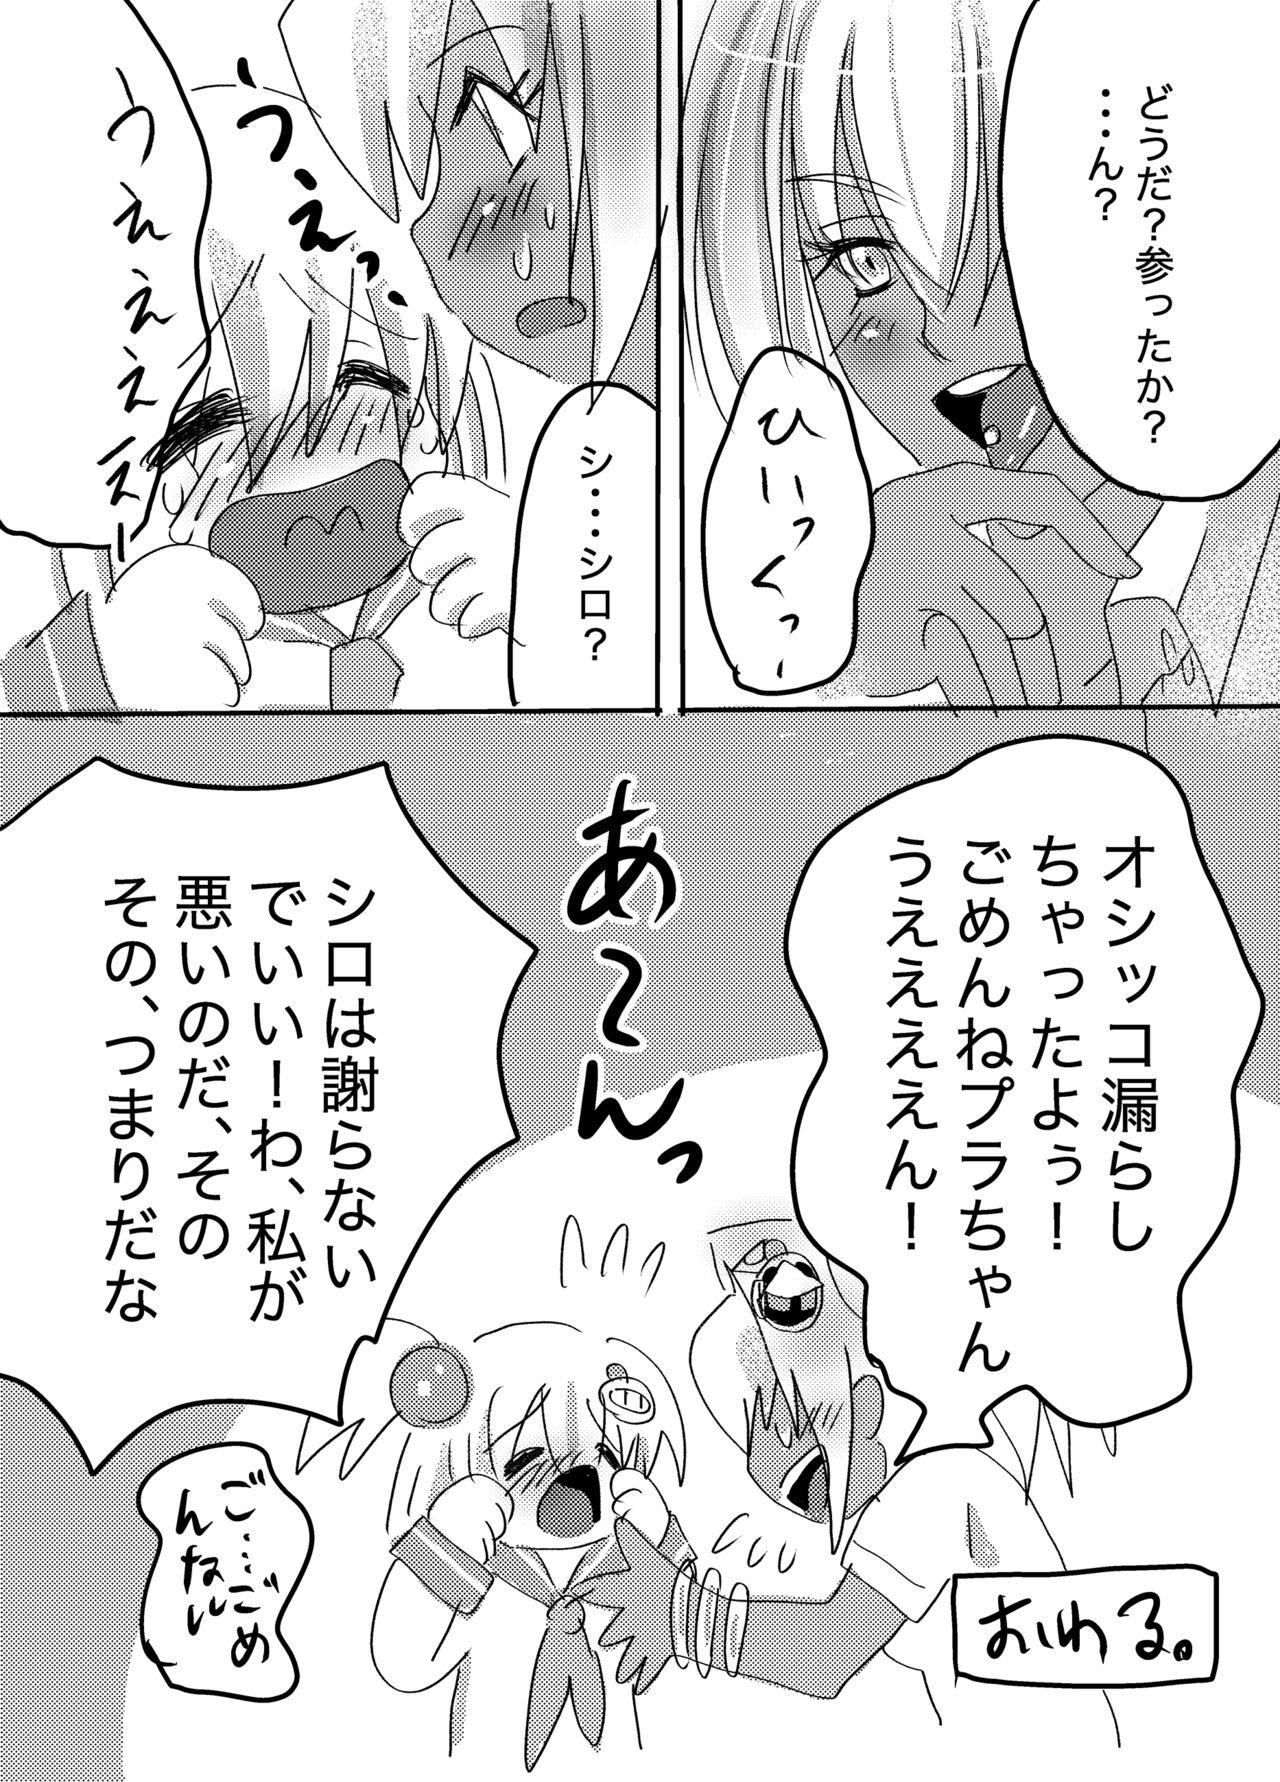 European Galtinum ni Omanko Peropero Sarechau Shiro-chan no Manga - Bomber girl Orgasmus - Page 8